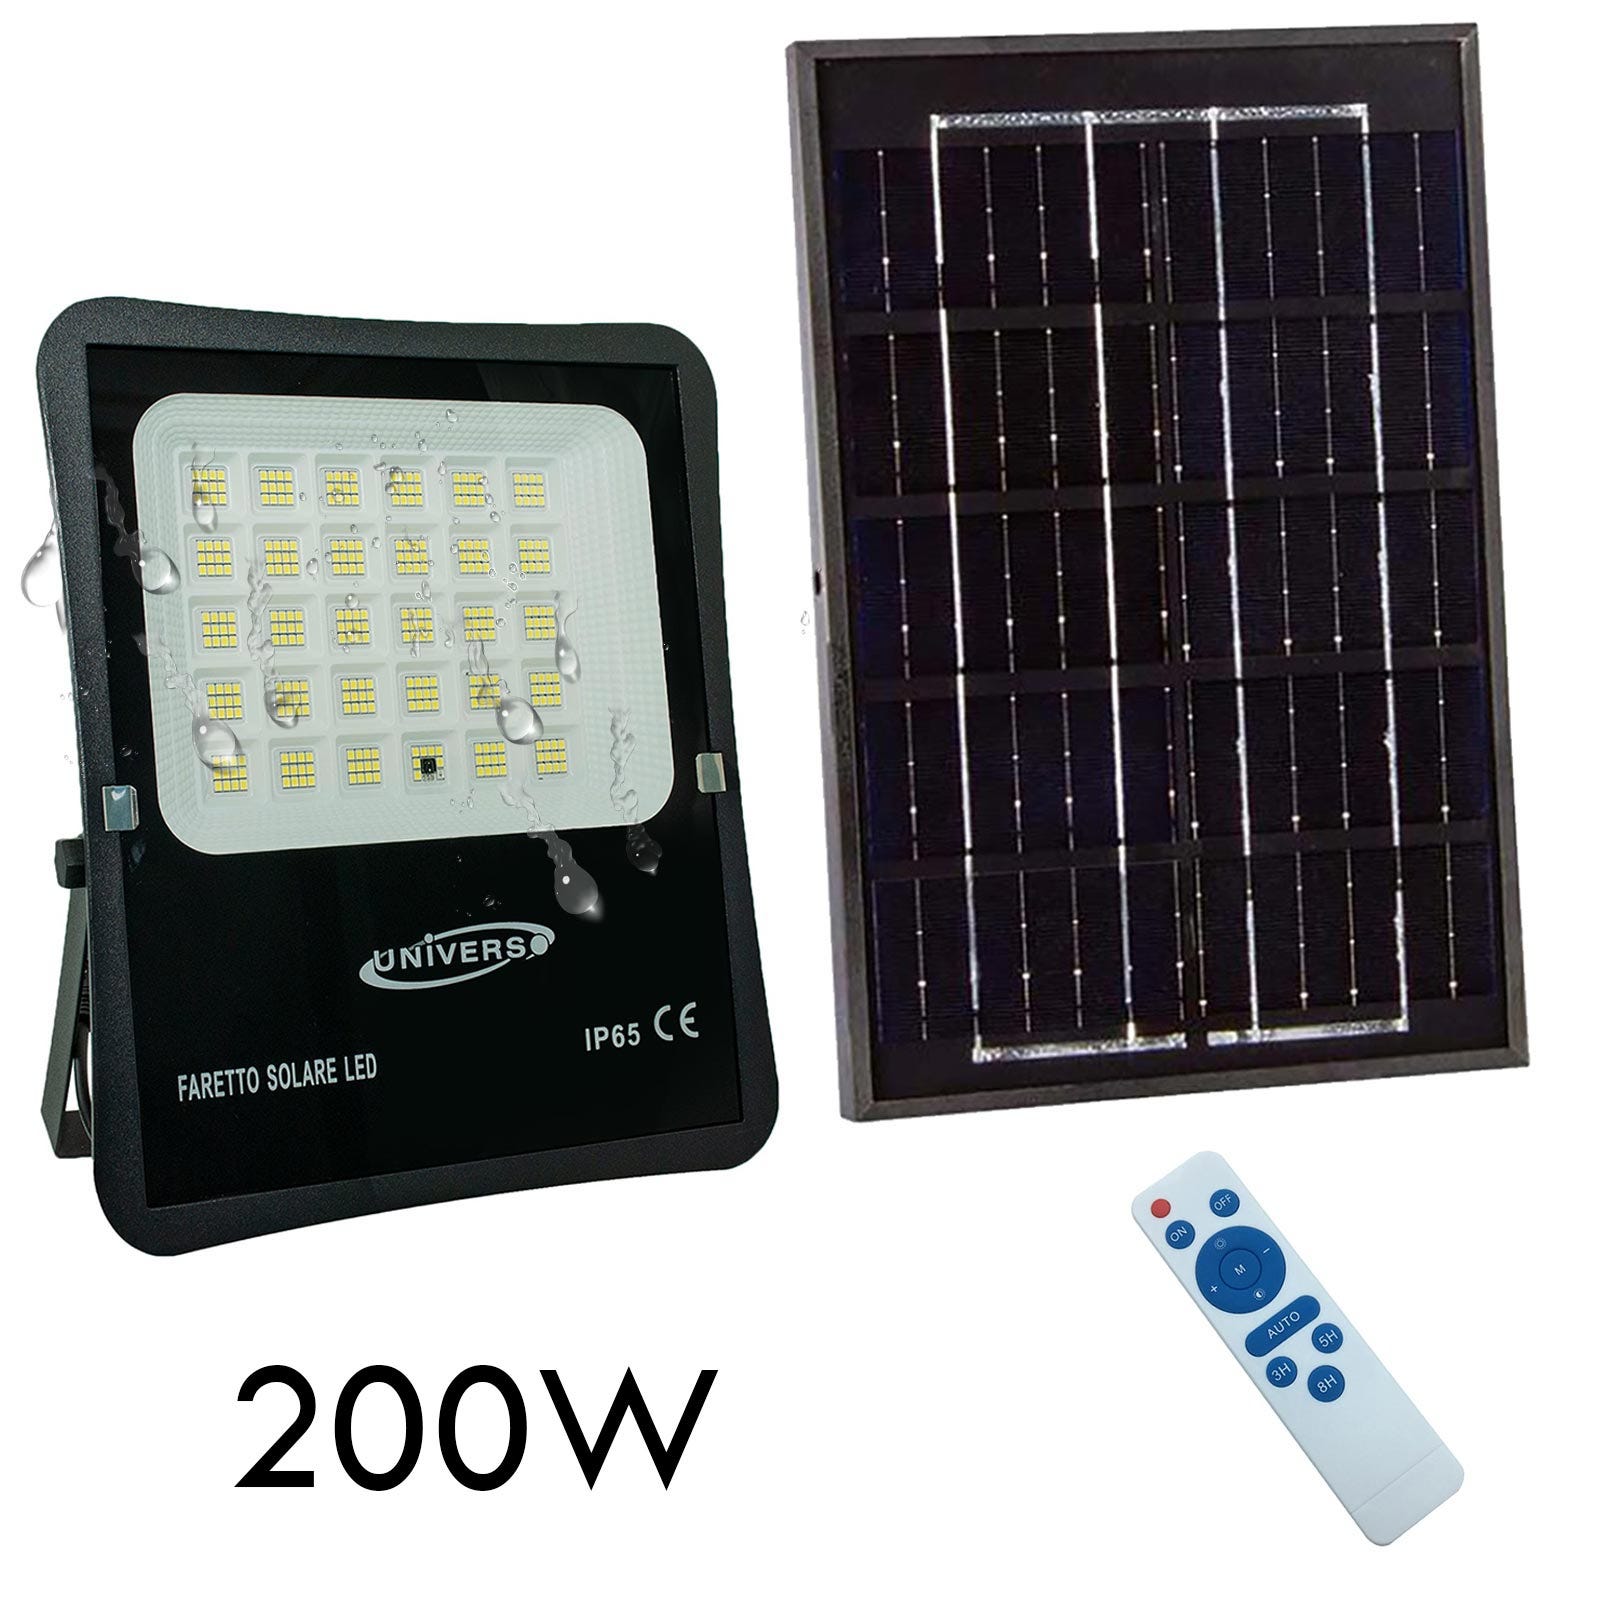 Faro pannello solare IP65 elevata autonomia 12 ore sensore crepuscolare  faretto luce sicurezza giardino cancello 200W